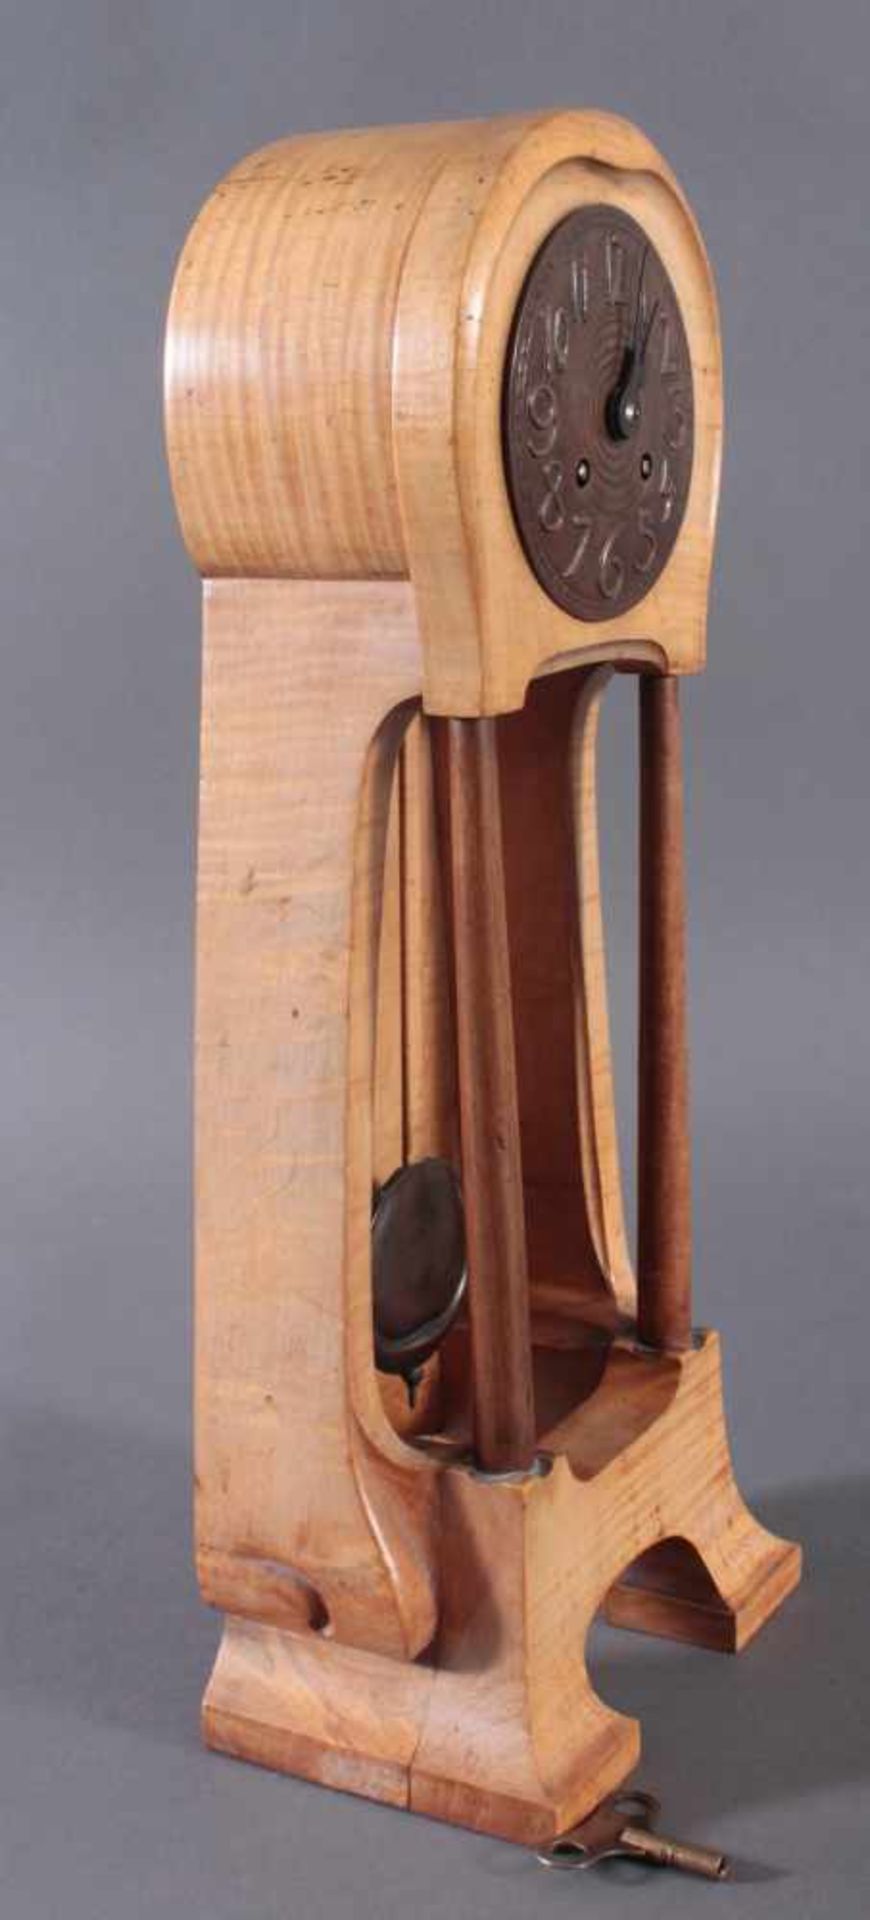 Jugendstil TischuhrHolz mit verschnörkelten Messingzifferblatt. Höhe ca. 46 cm.Lenzkirch Uhrwerk mit - Bild 2 aus 4